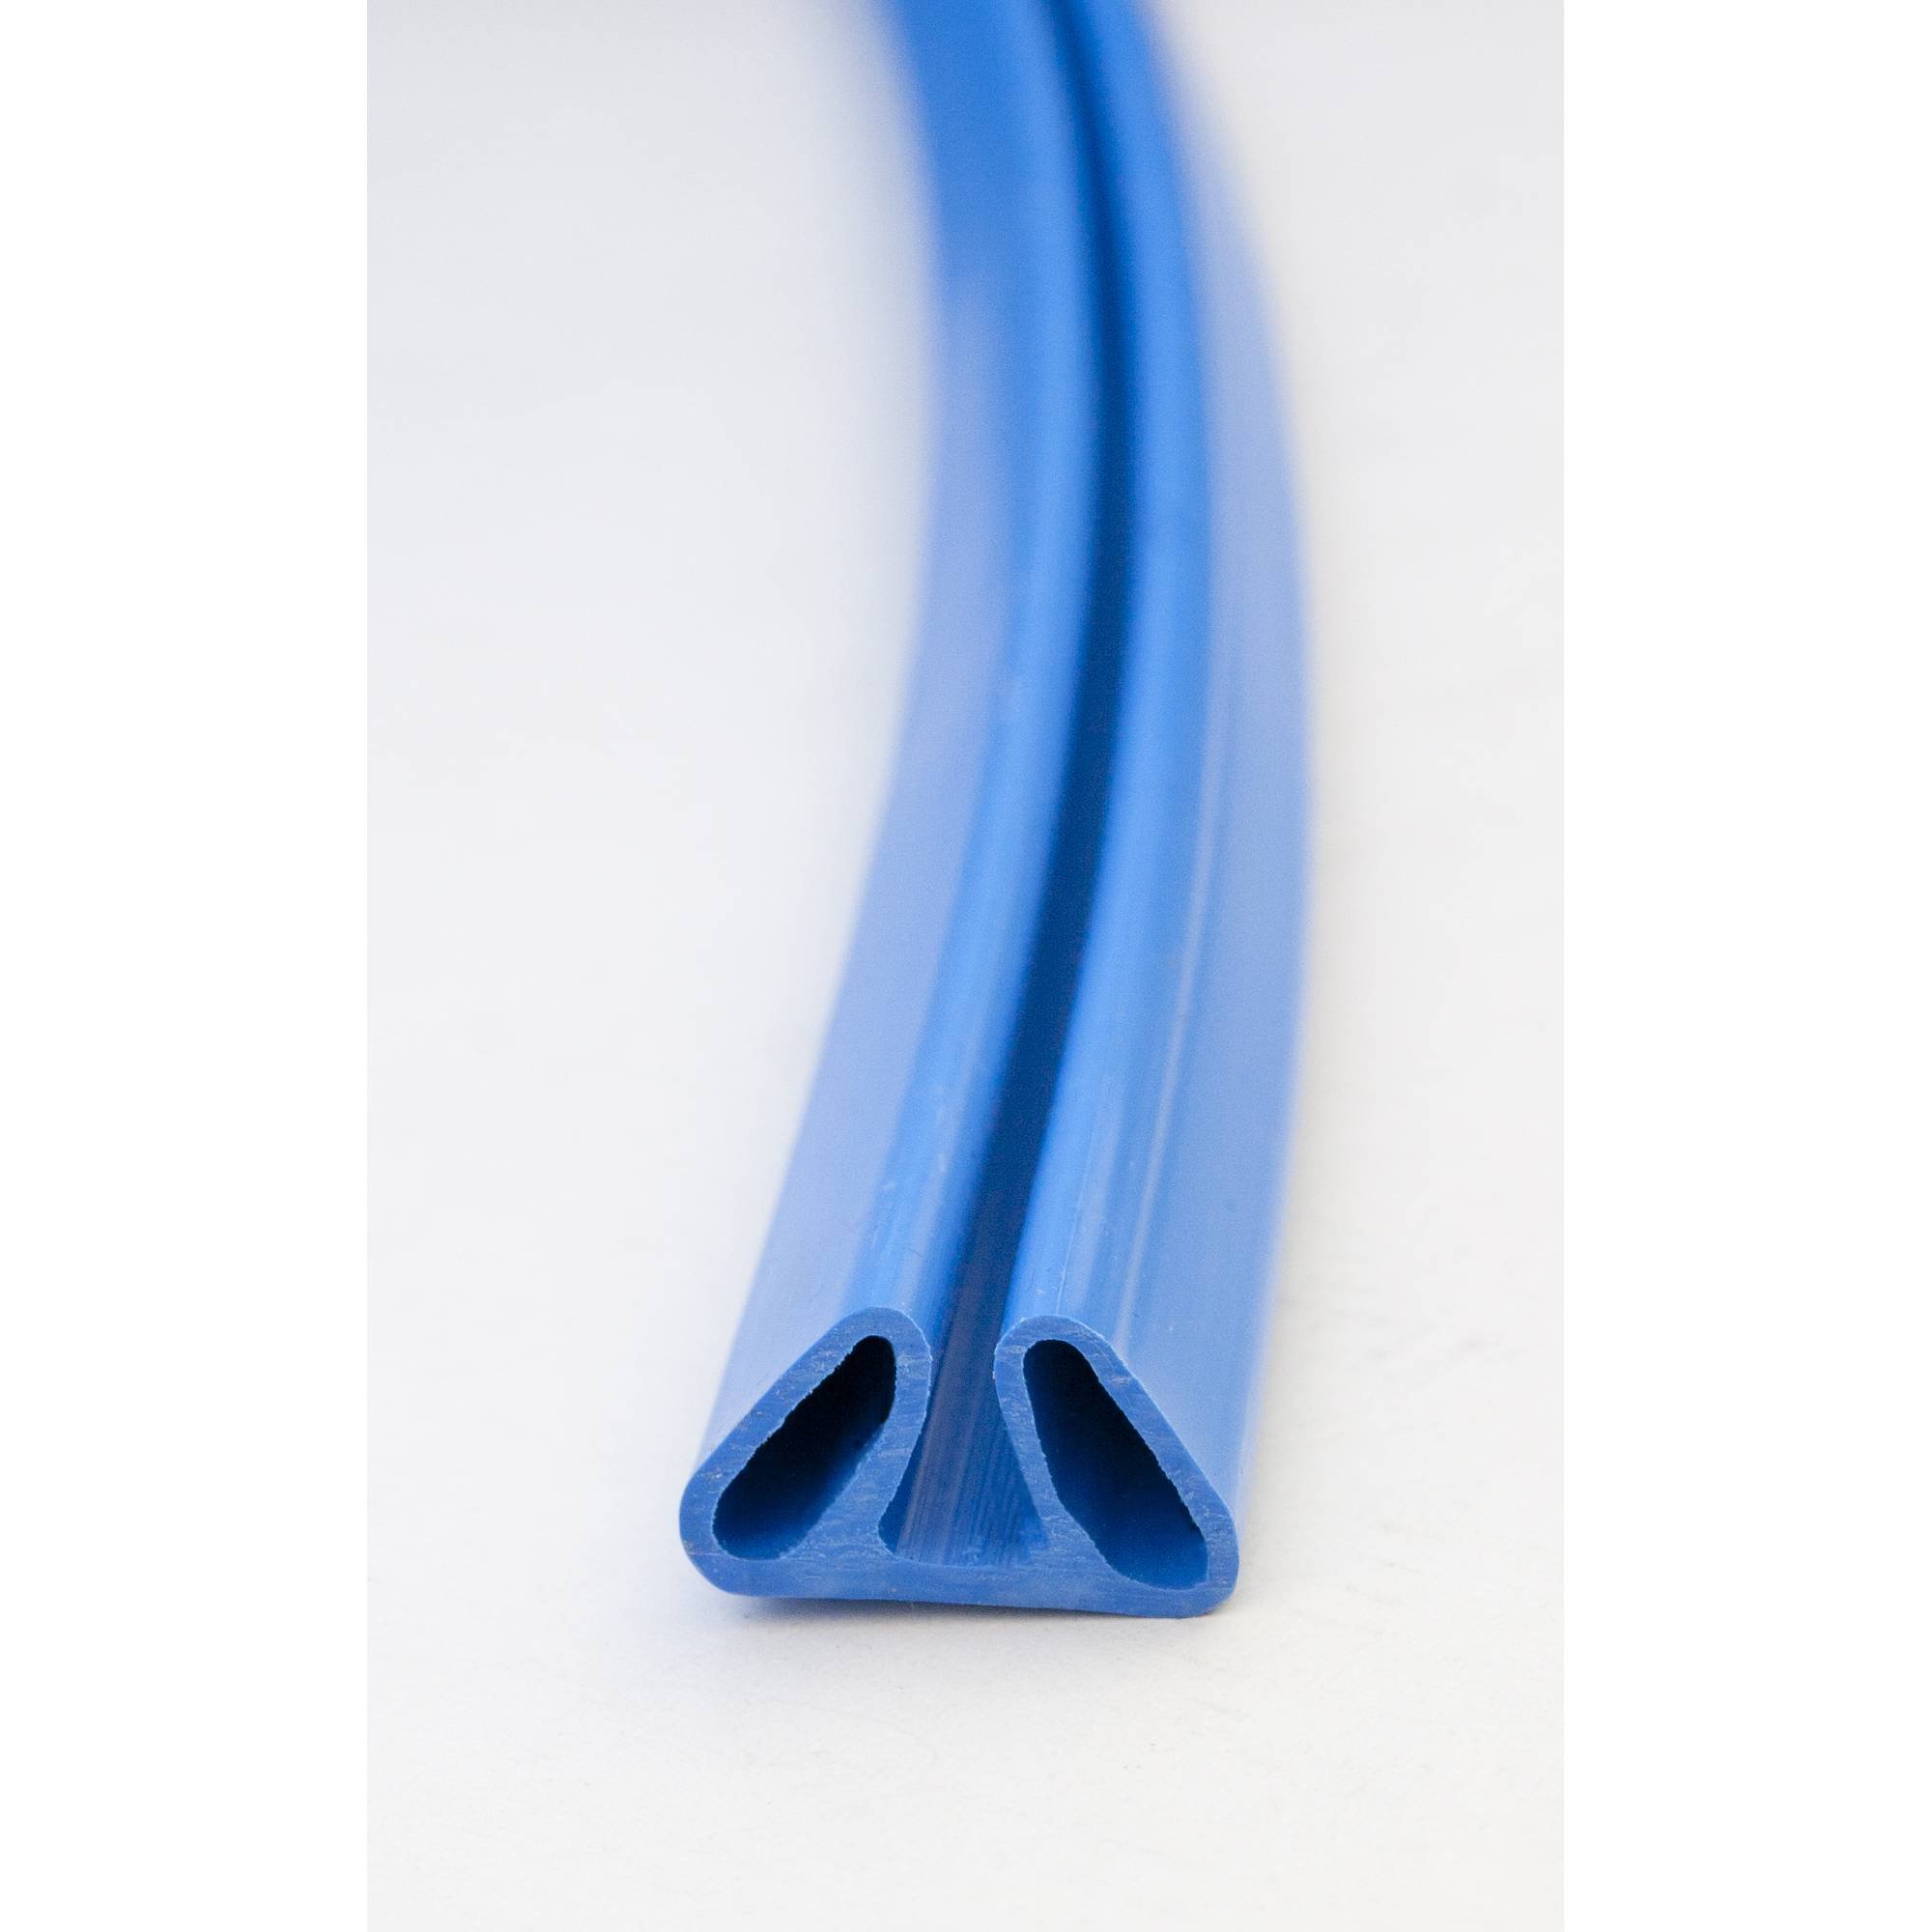 Stahlwandpool rund Exklusiv 200x120 cm, Stahl 0,6 mm weiß, Folie 0,6 mm blau, Einhängebiese